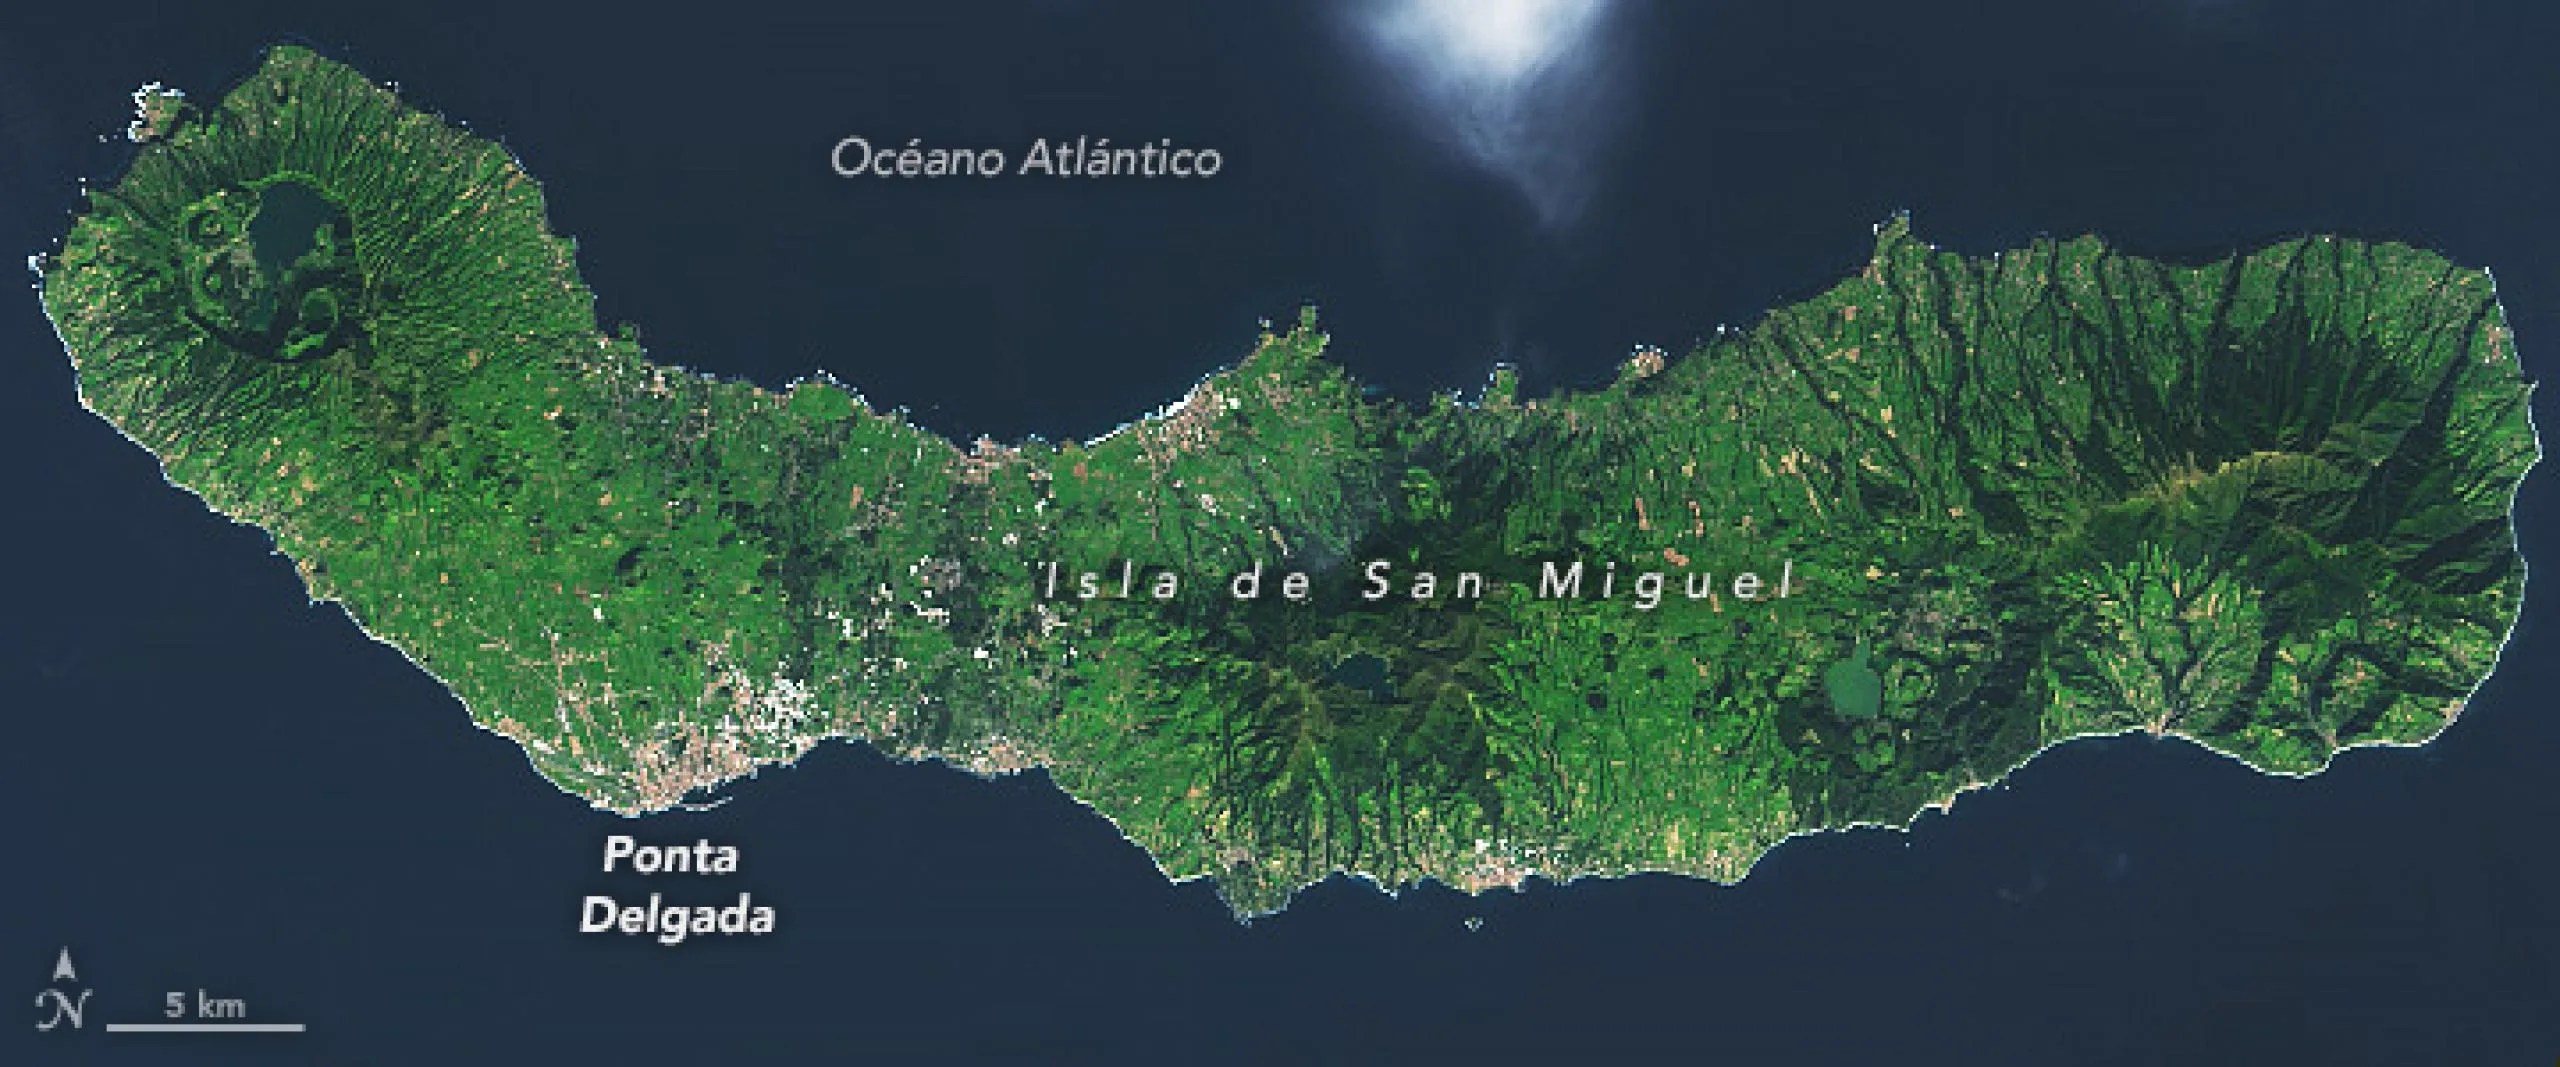 Isla de San Miguel, 9 de diciembre de 2018